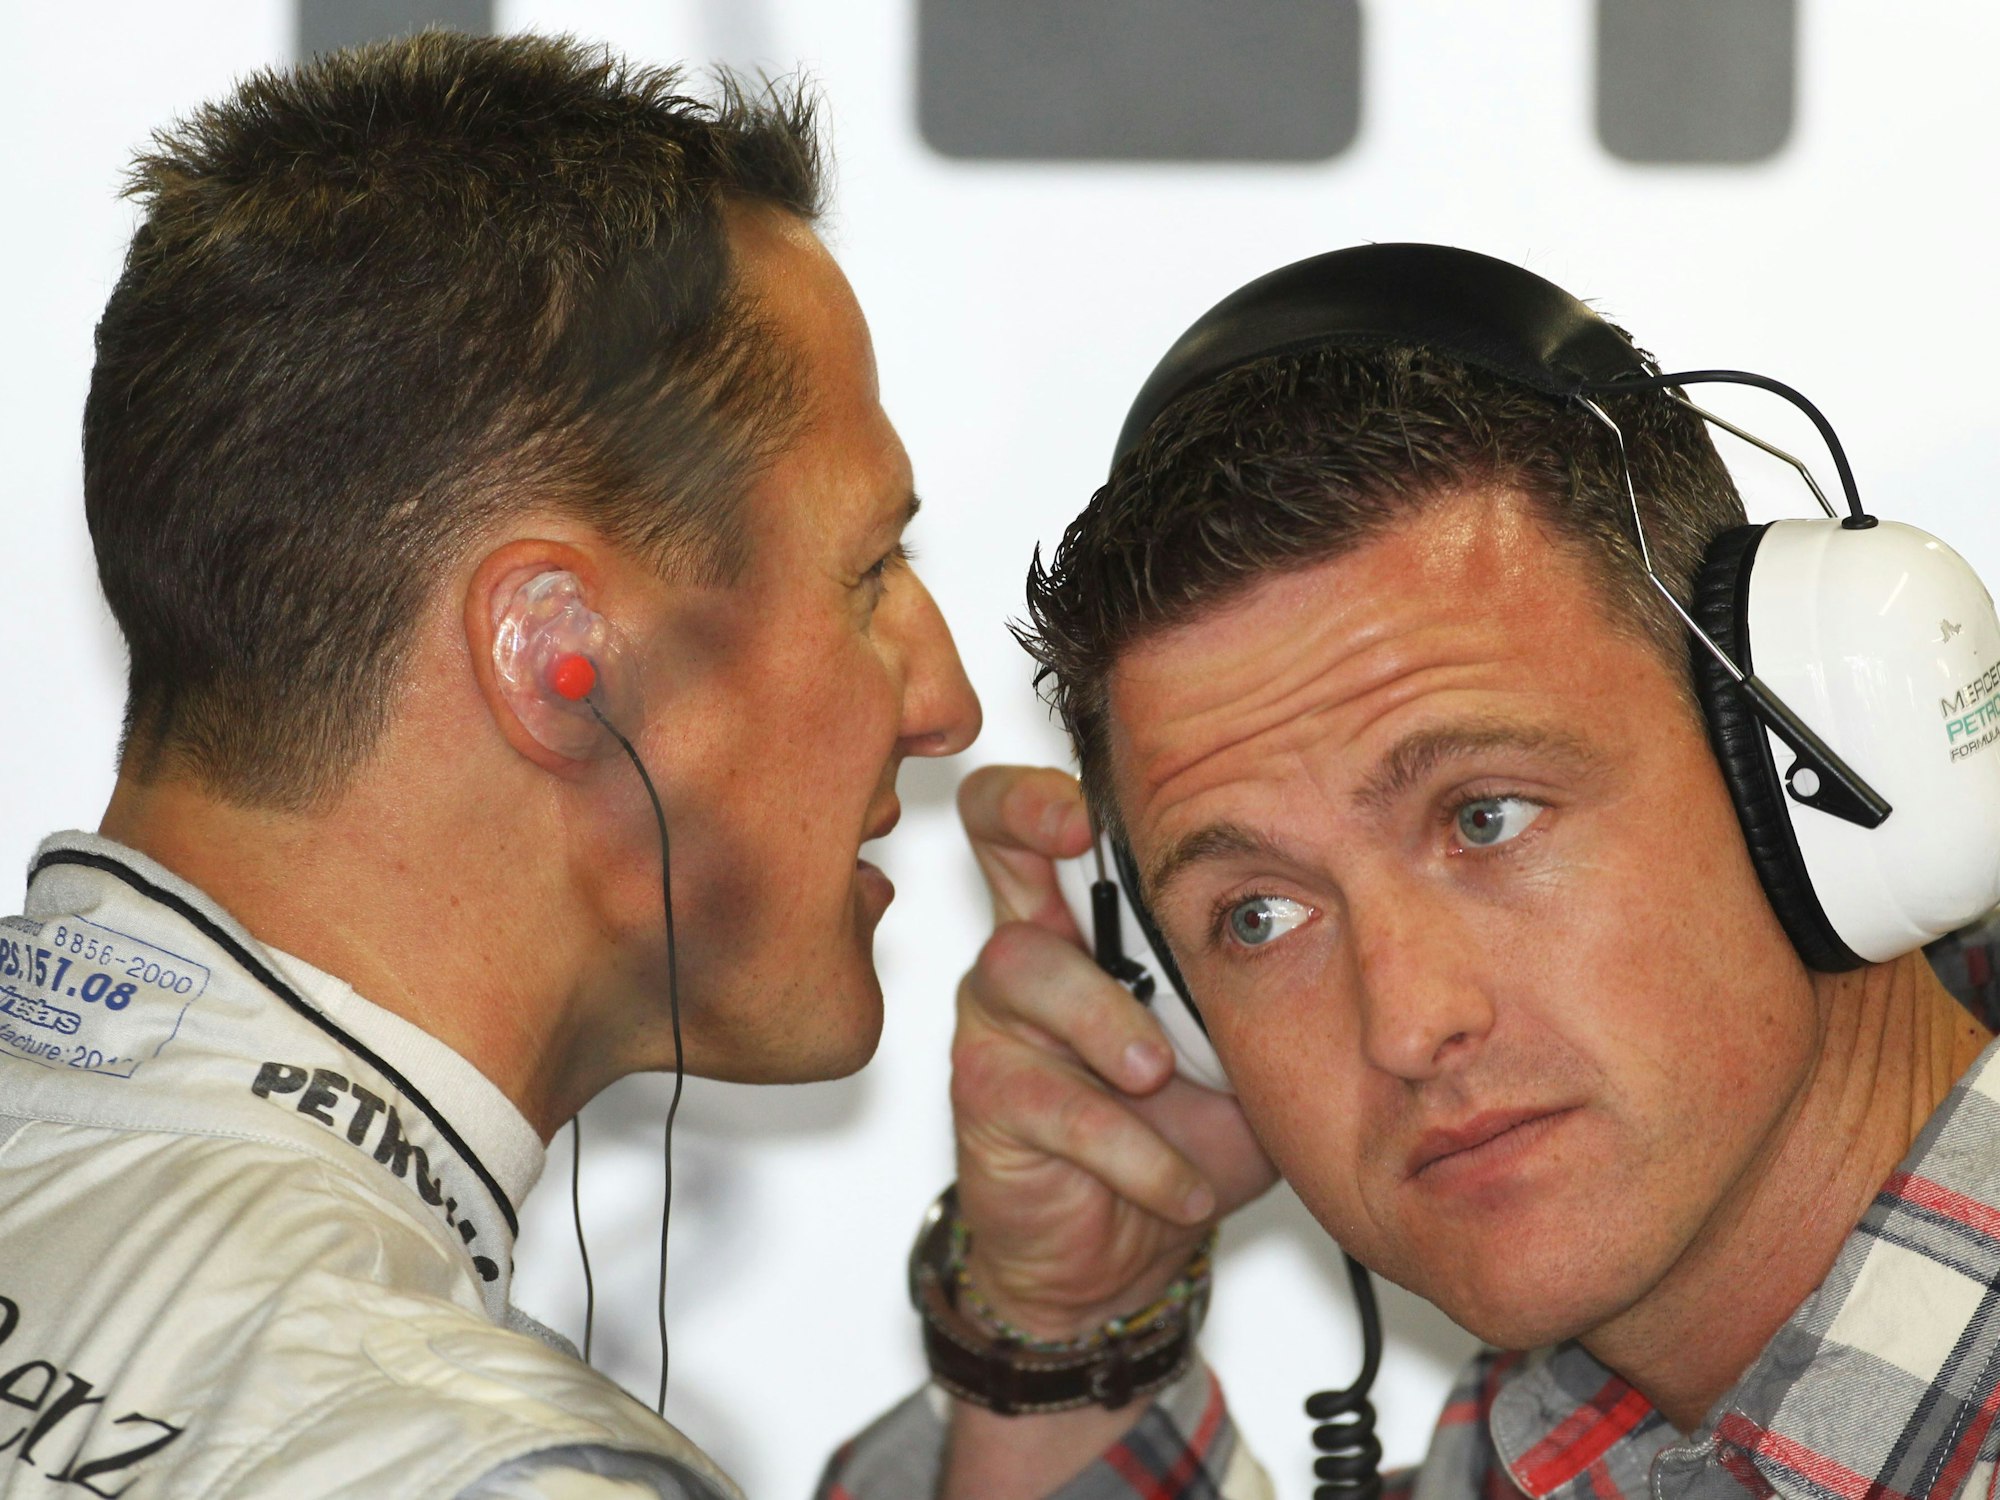 Michael Schumacher (l) von Mercedes GP spricht im zweiten Training auf der Formel-1-Rennstrecke von Suzuka in Japan mit seinem jüngeren Bruder Ralf.